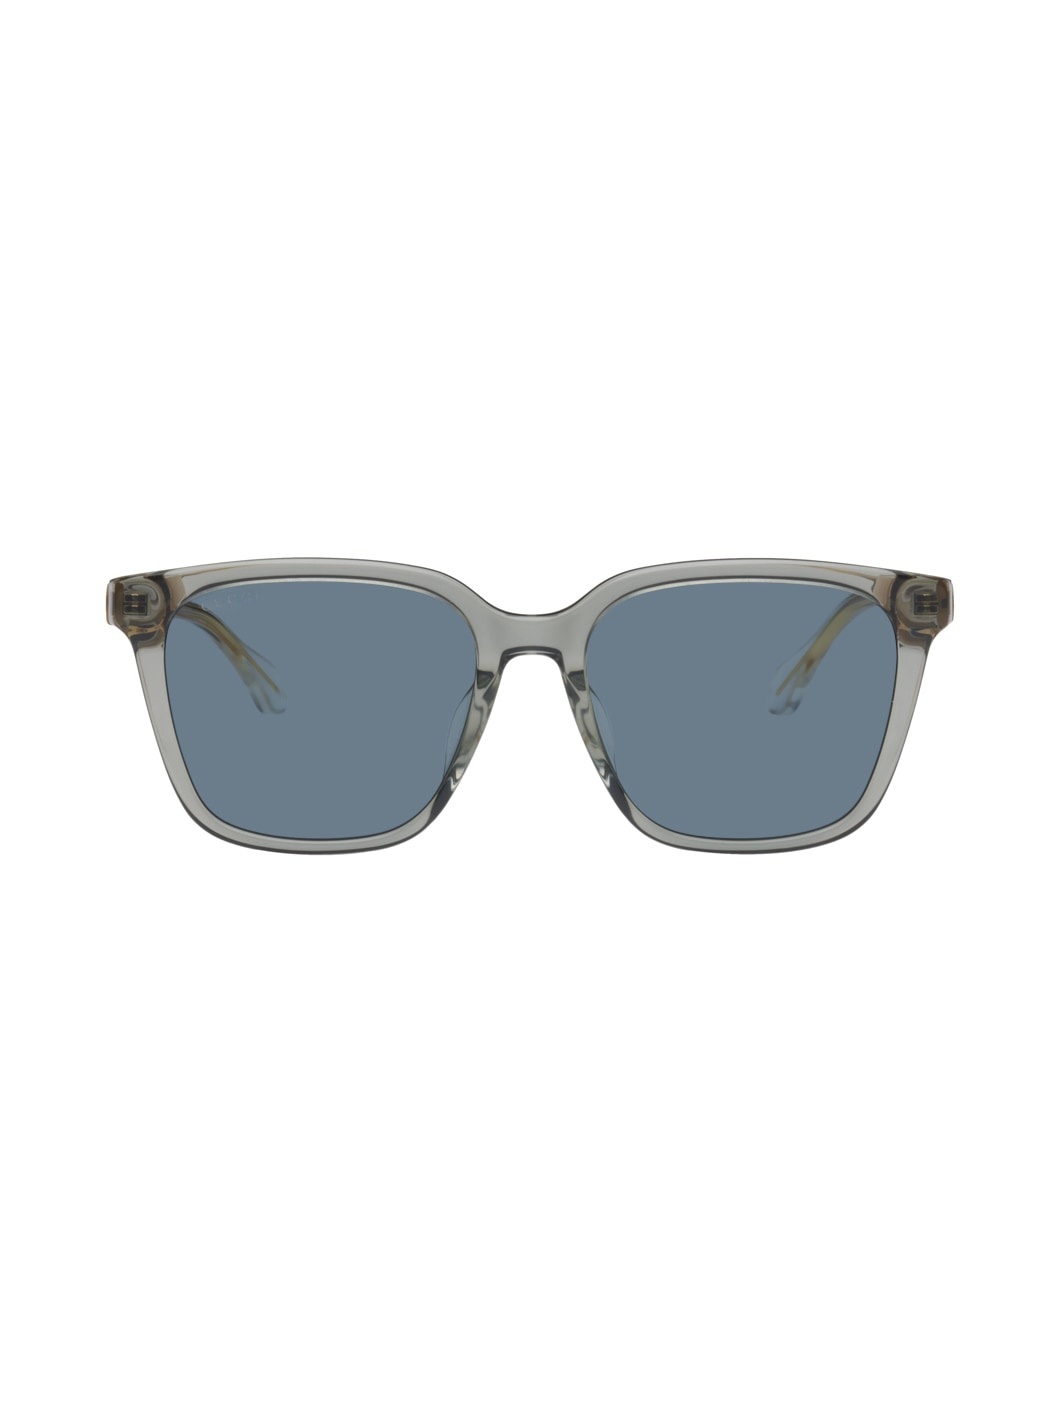 Gray Square Sunglasses - 1